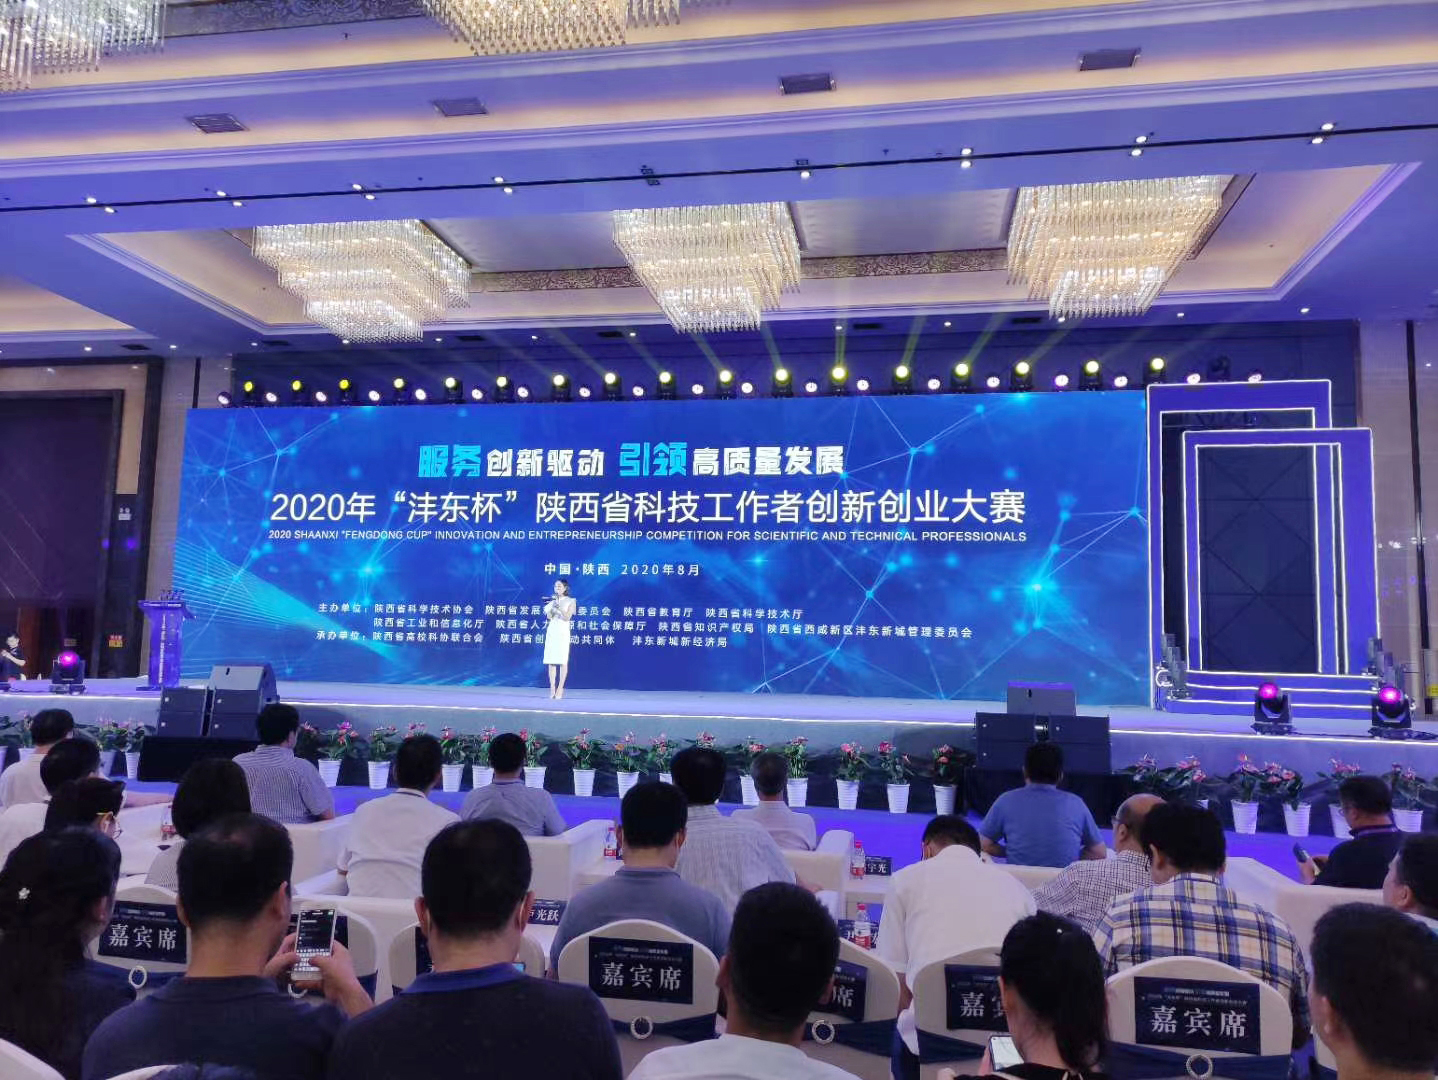 热烈祝贺陕西恒远在2020年陕西省科技工作者创新创业大赛中分别荣获一等奖和三等奖